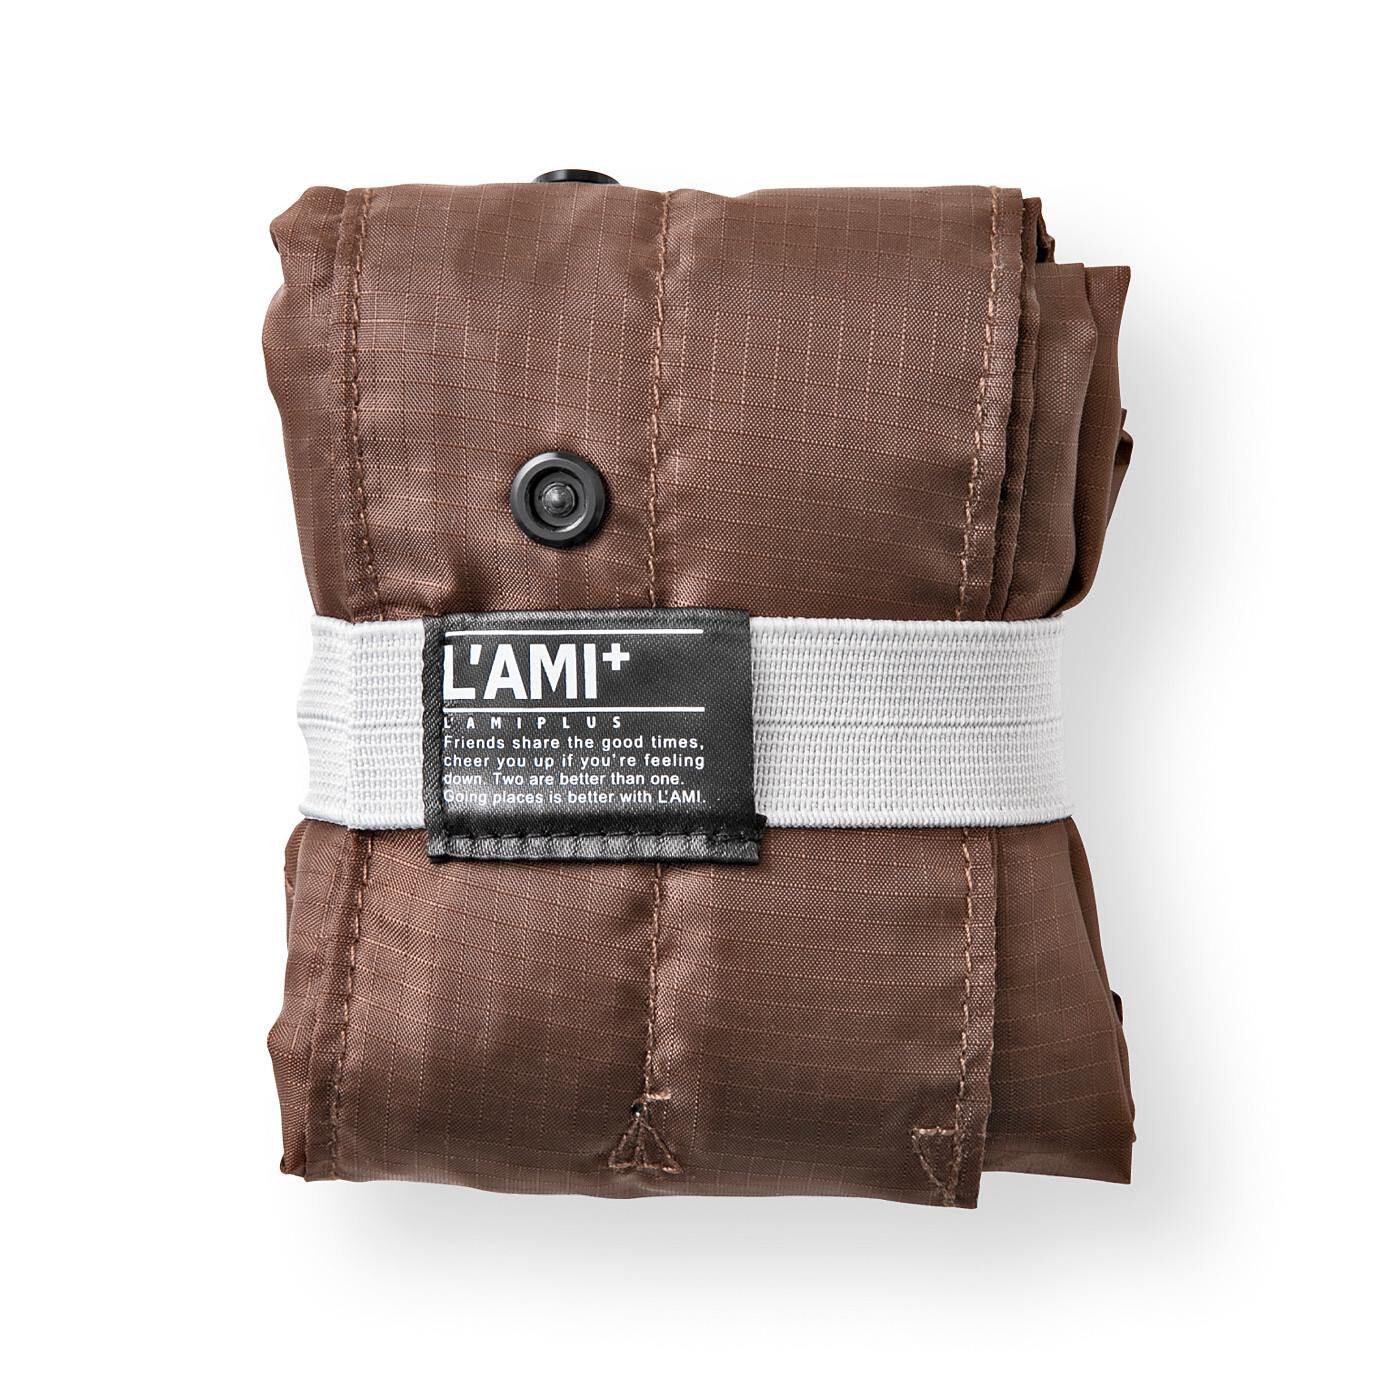 L'AMIPLUS|ラミプリュス　レインカバーにもなる 風呂敷みたいなエコバッグ|コンパクトにたたんで持ち運びOK。